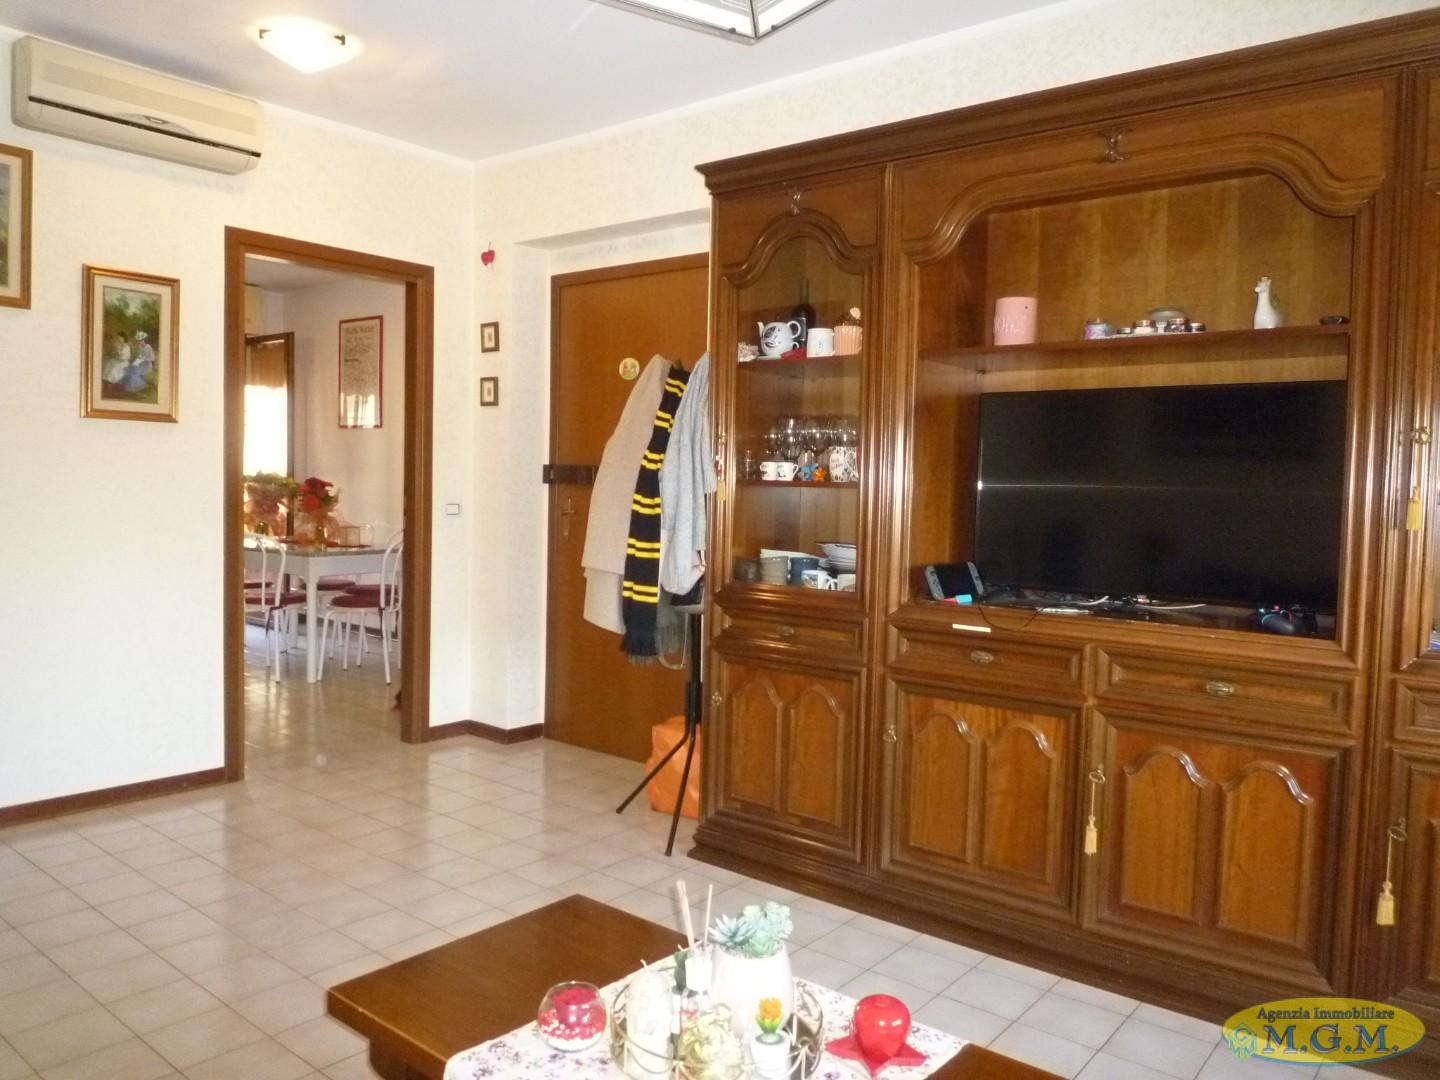 Appartamento in vendita a Buggiano, 4 locali, prezzo € 120.000 | PortaleAgenzieImmobiliari.it